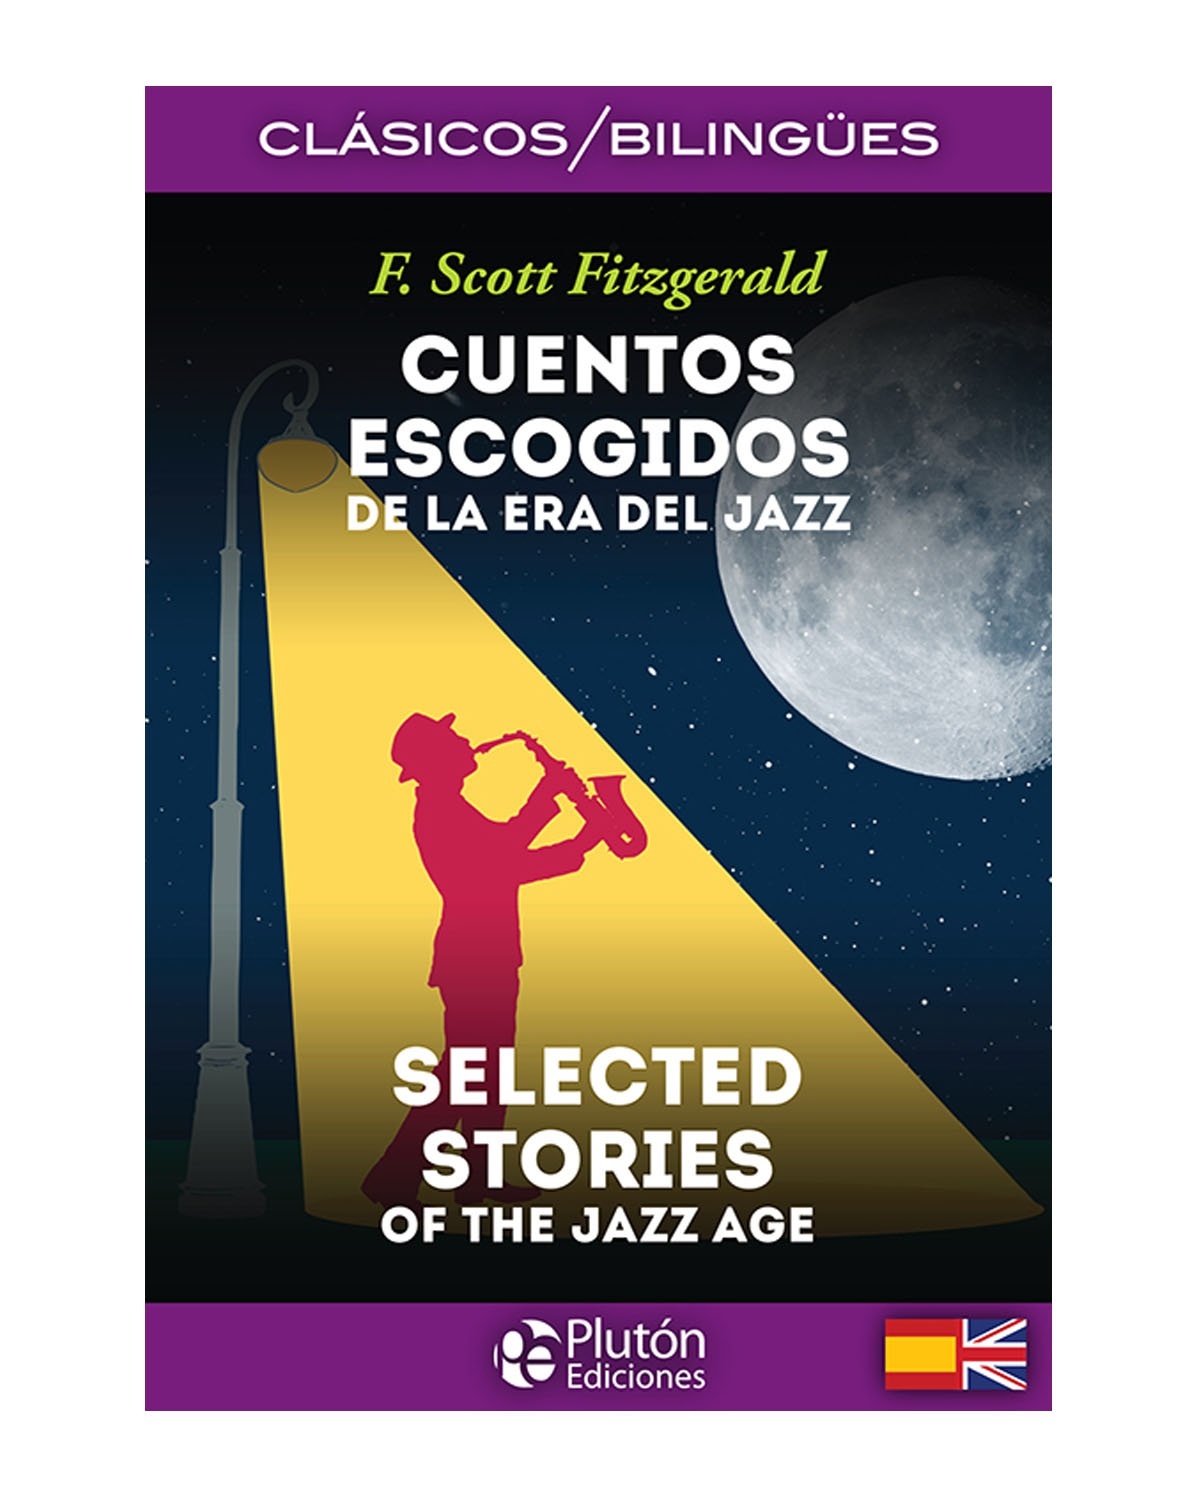 Cuentos Escogidos de la era del Jazz/Selected Stories of the Jazz Age